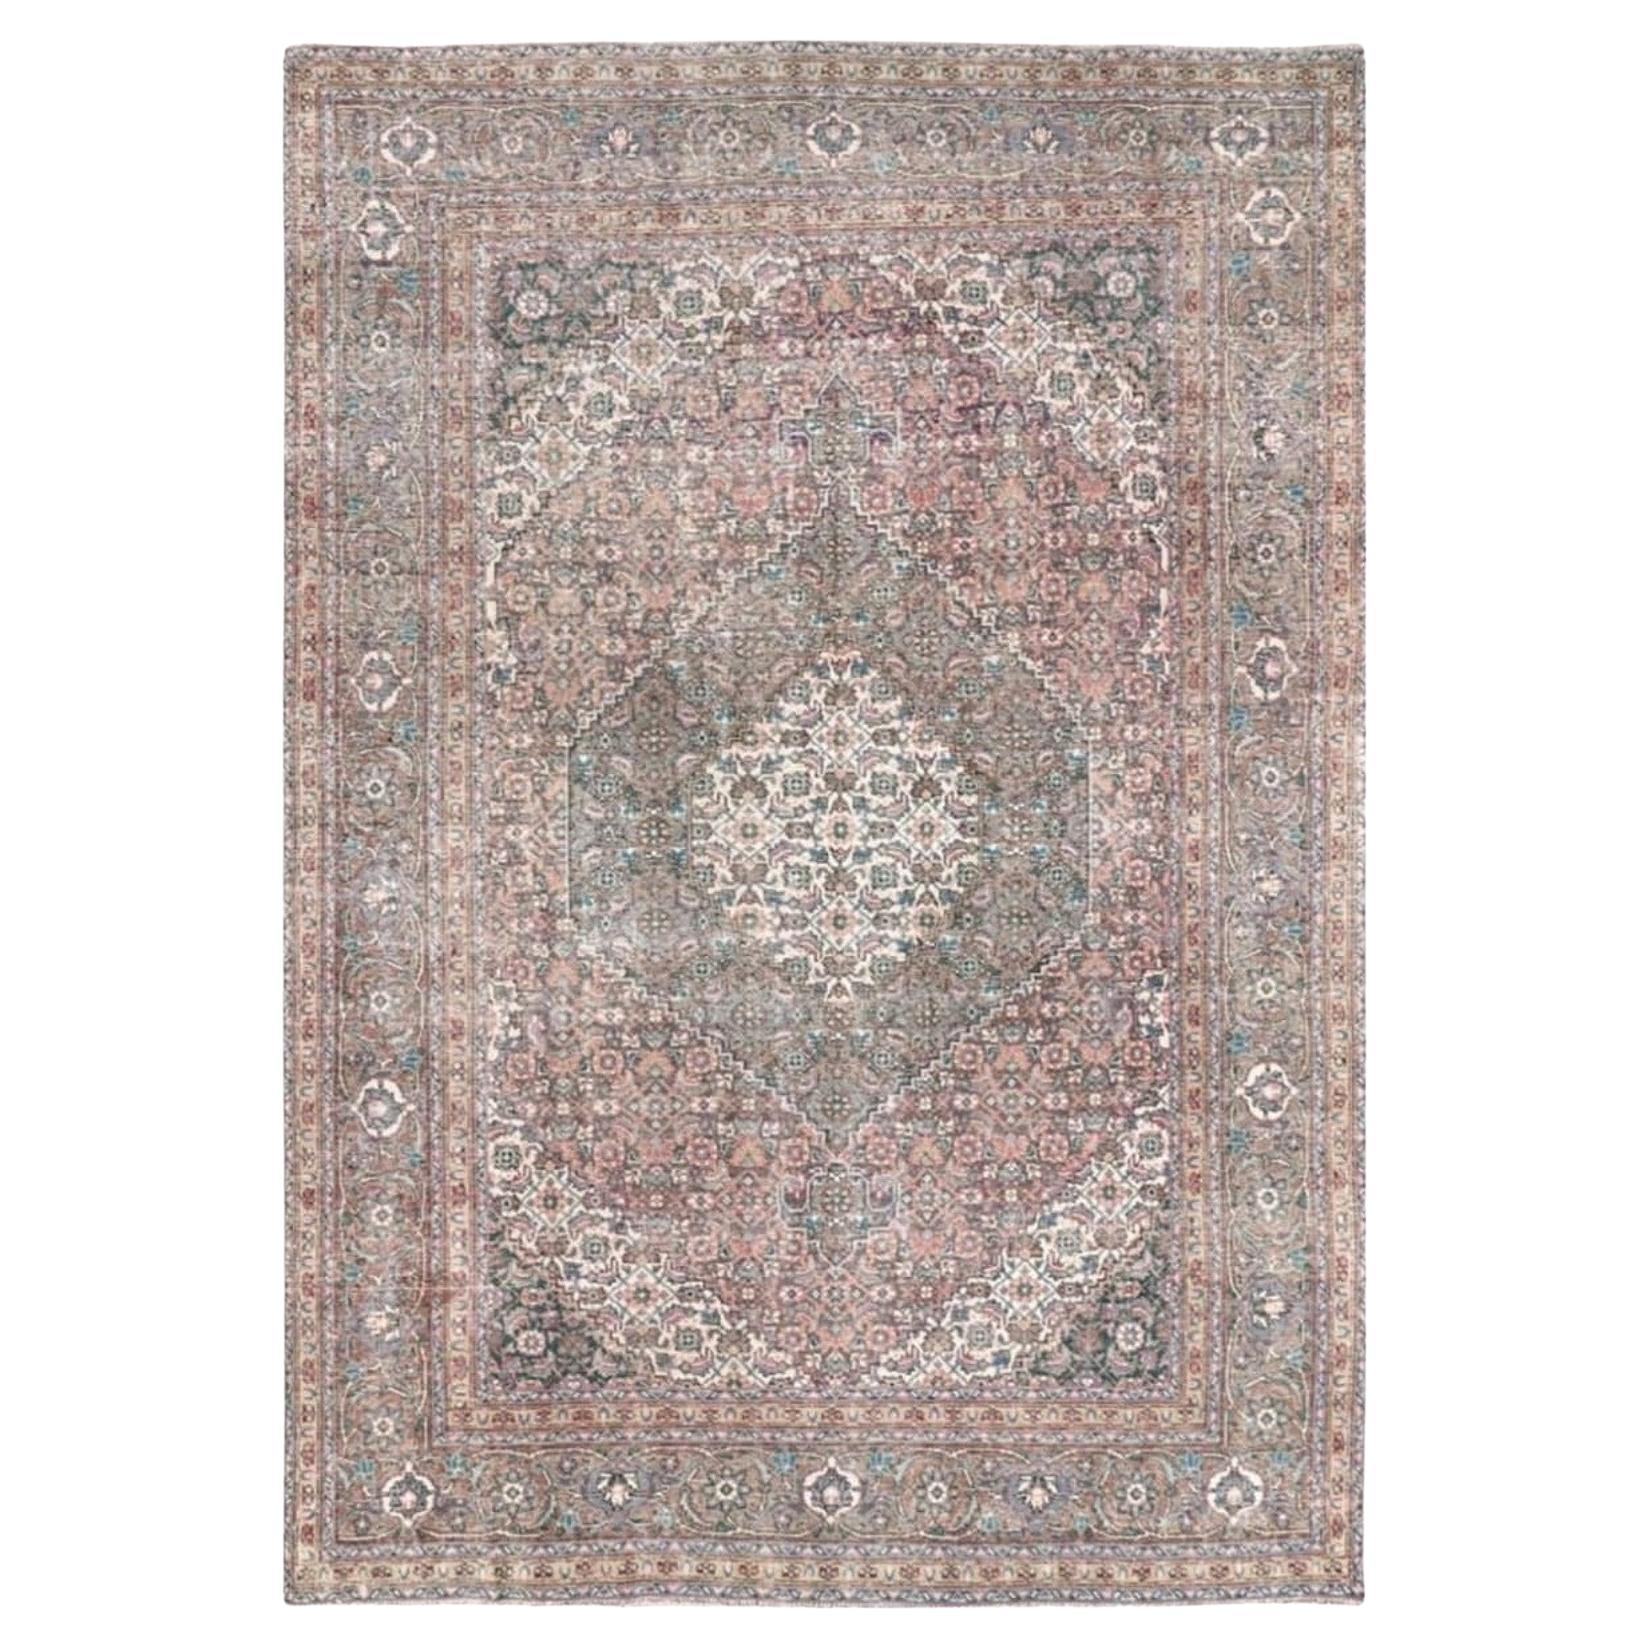  Tabriz Vintage Teppich 8x12 ft Handgeknüpft Room Size Wolle Gedeckte Farben 360x250 cm